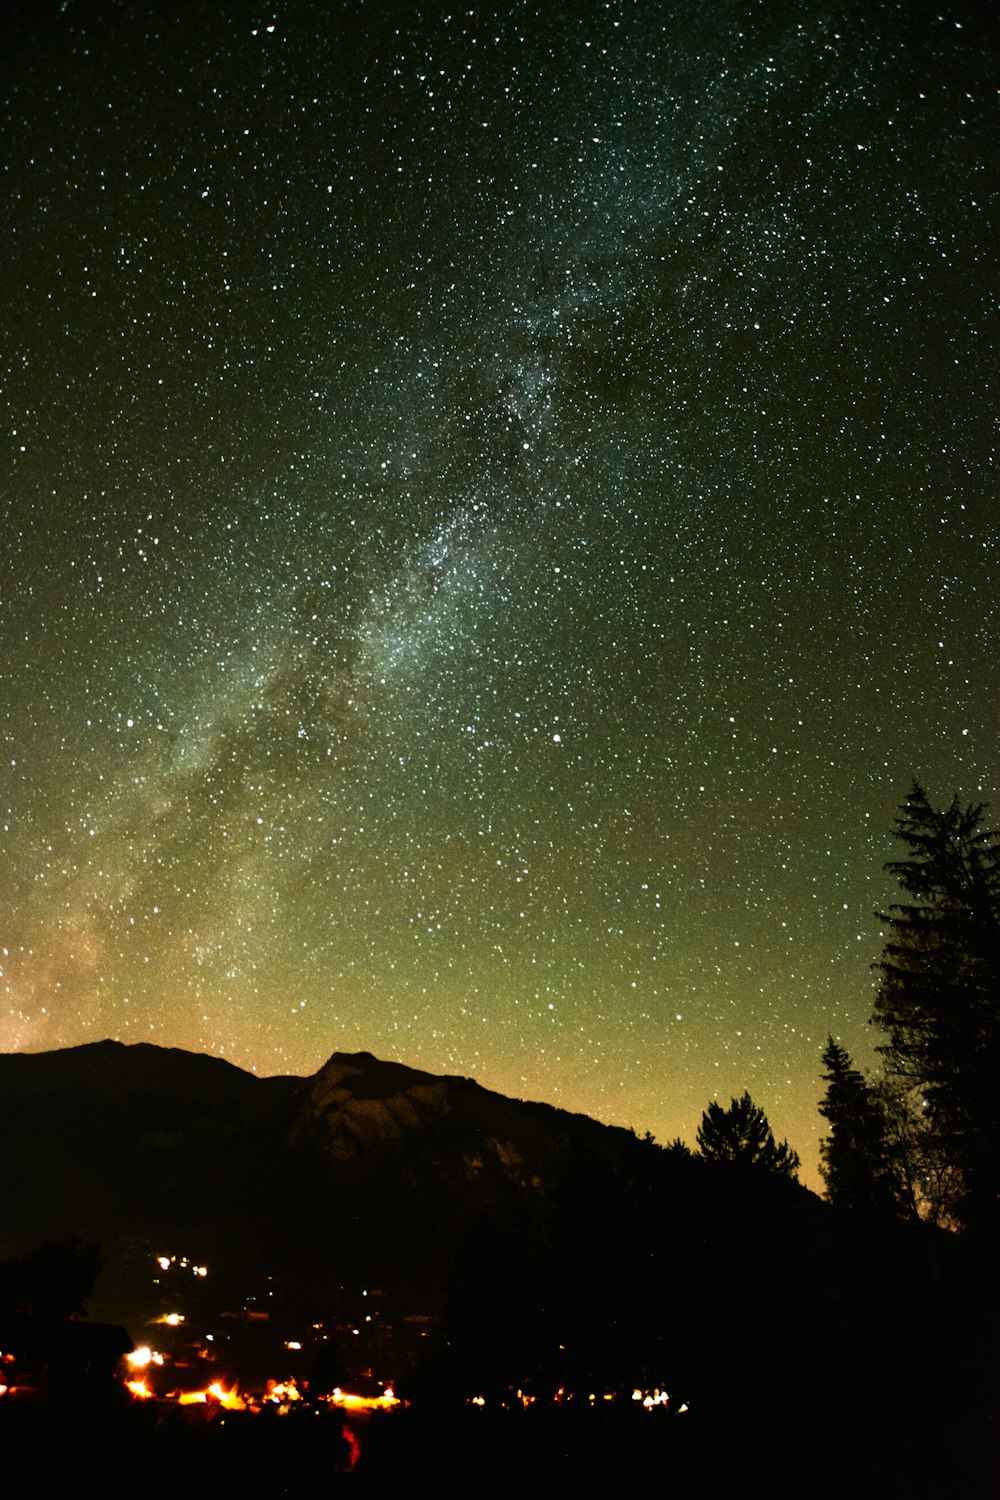 Tiefwinkelfotografie von Sternen bei Nacht